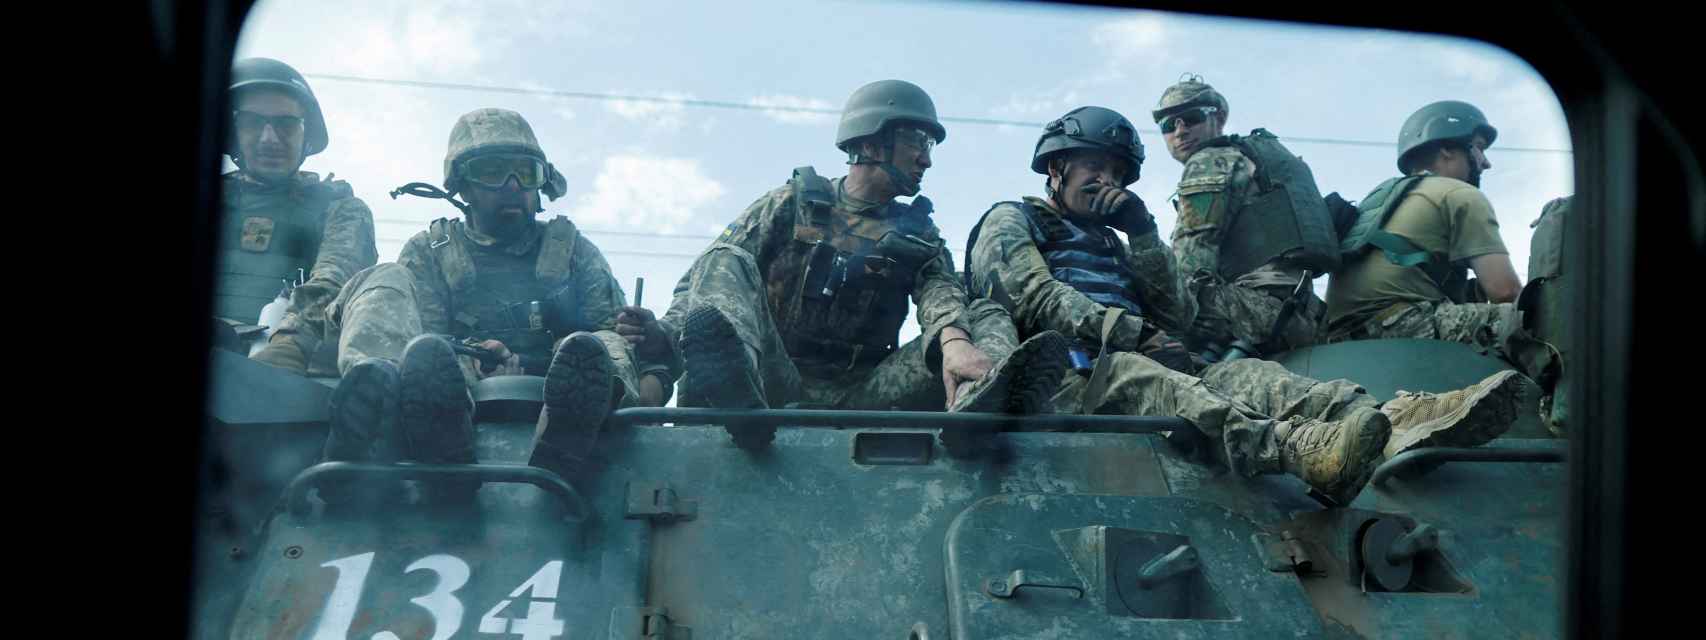 Militares ucranianos viajan en un vehículo de combate, en Kramatorsk (Donetsk).